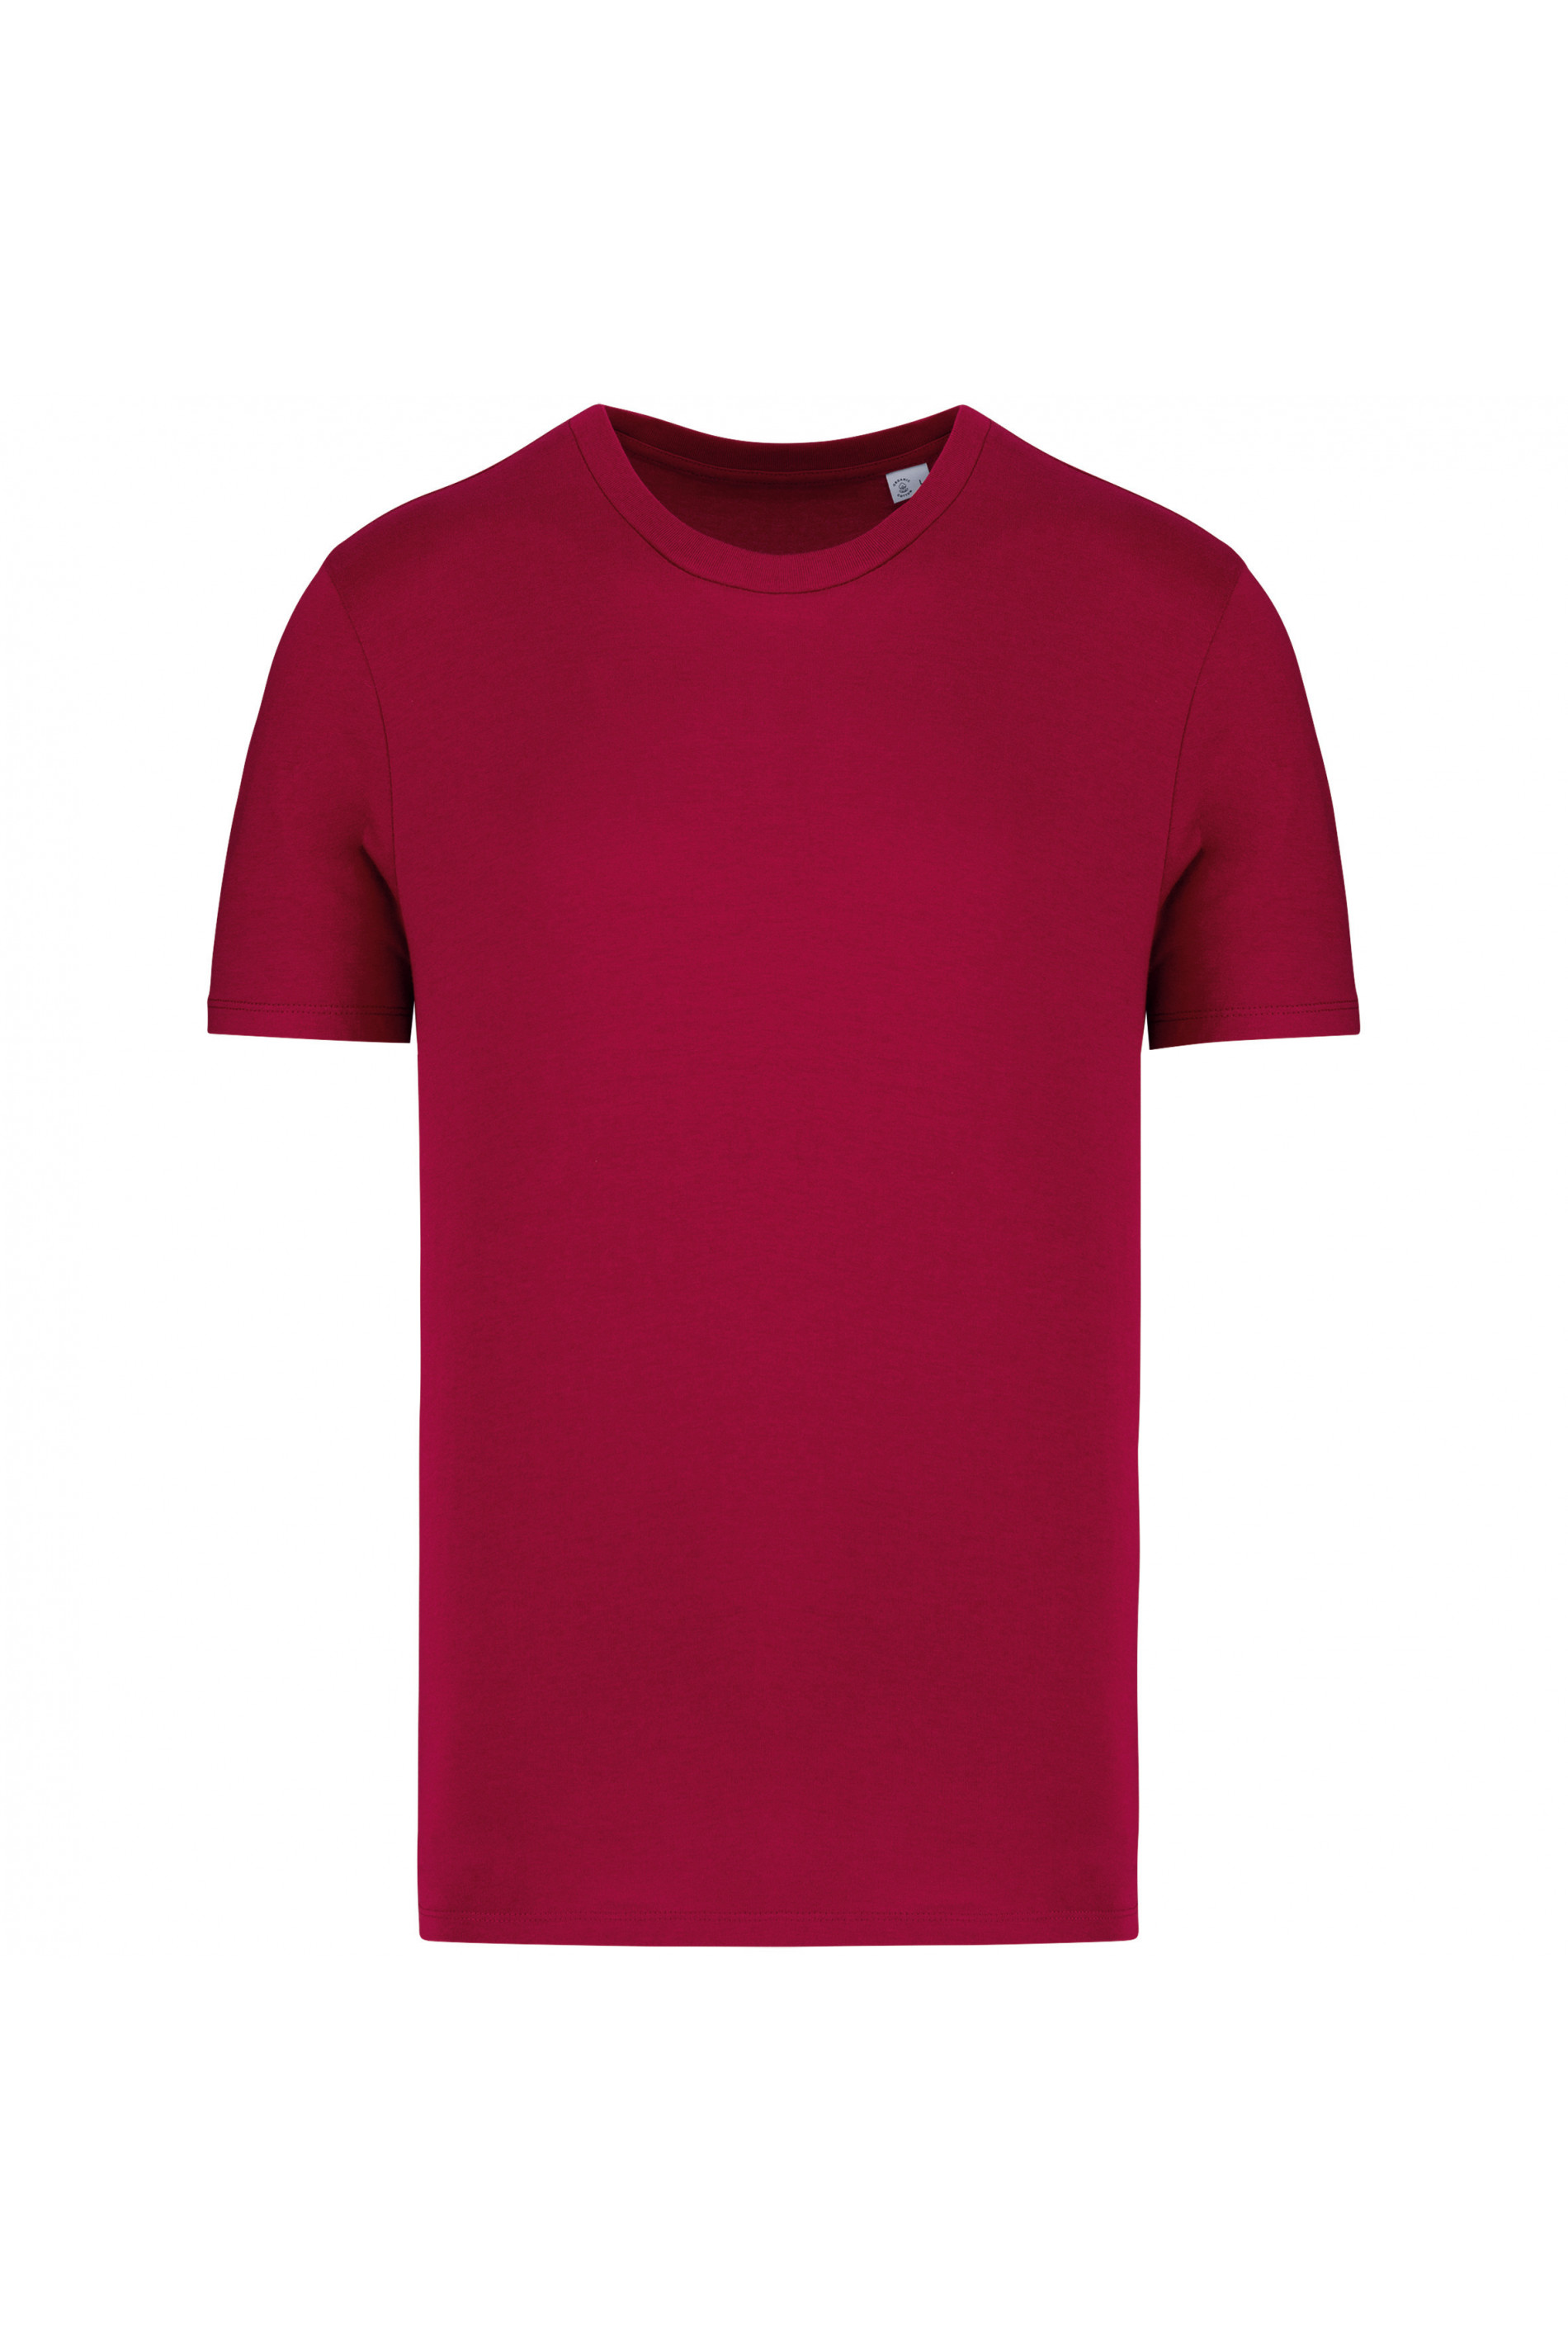 Unisex-T-Shirt mit kurzen Ärmeln aus Bio-Baumwolle von Native Spirit